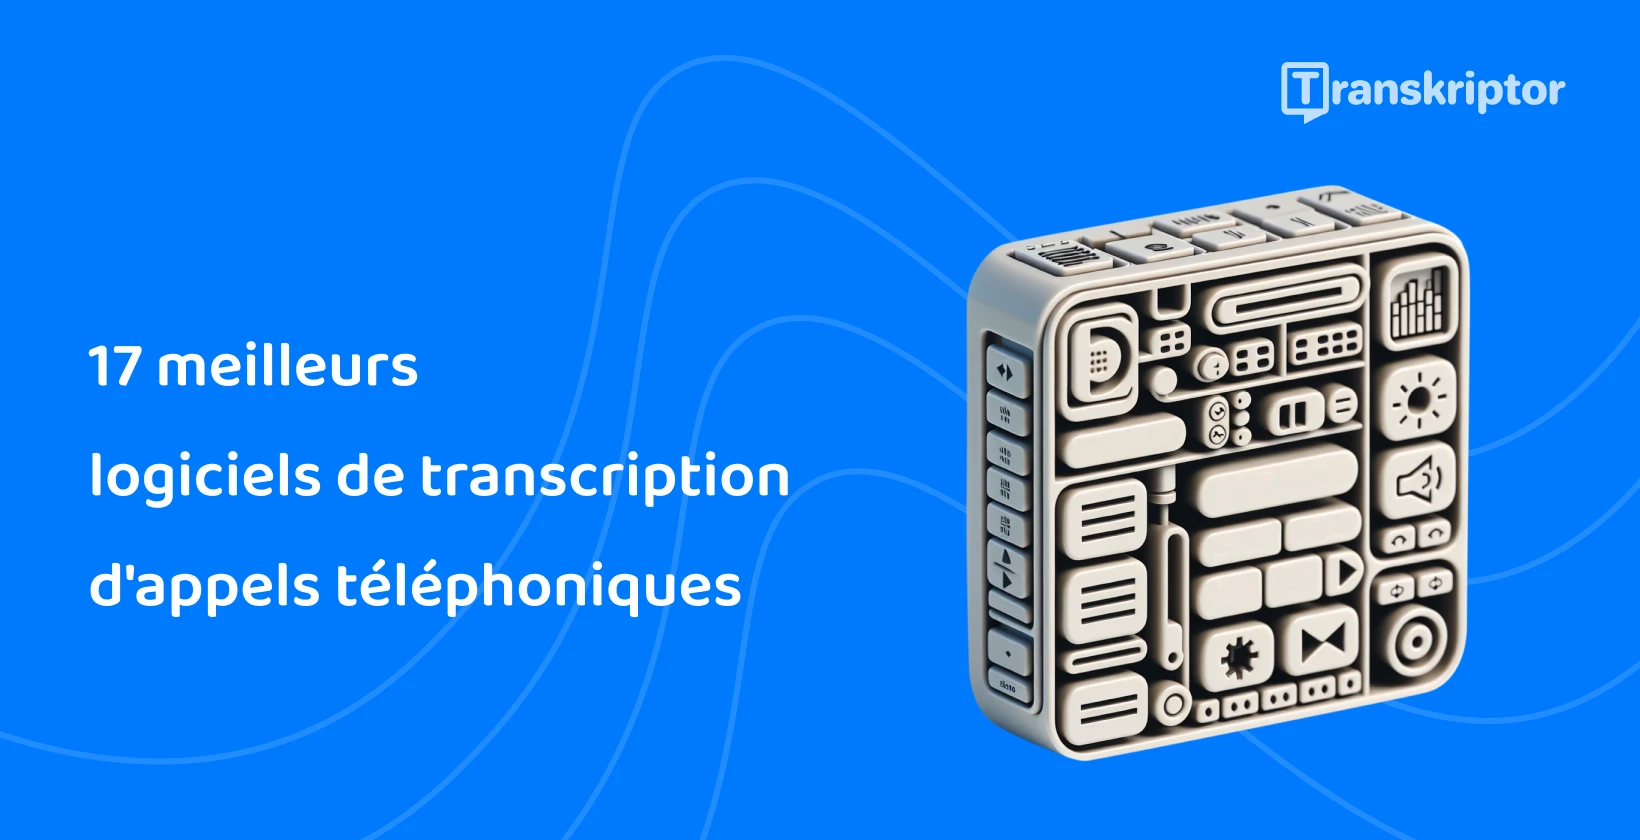 Appelez le cube d’icônes du logiciel de transcription illustrant les fonctionnalités efficaces de Transkriptor.